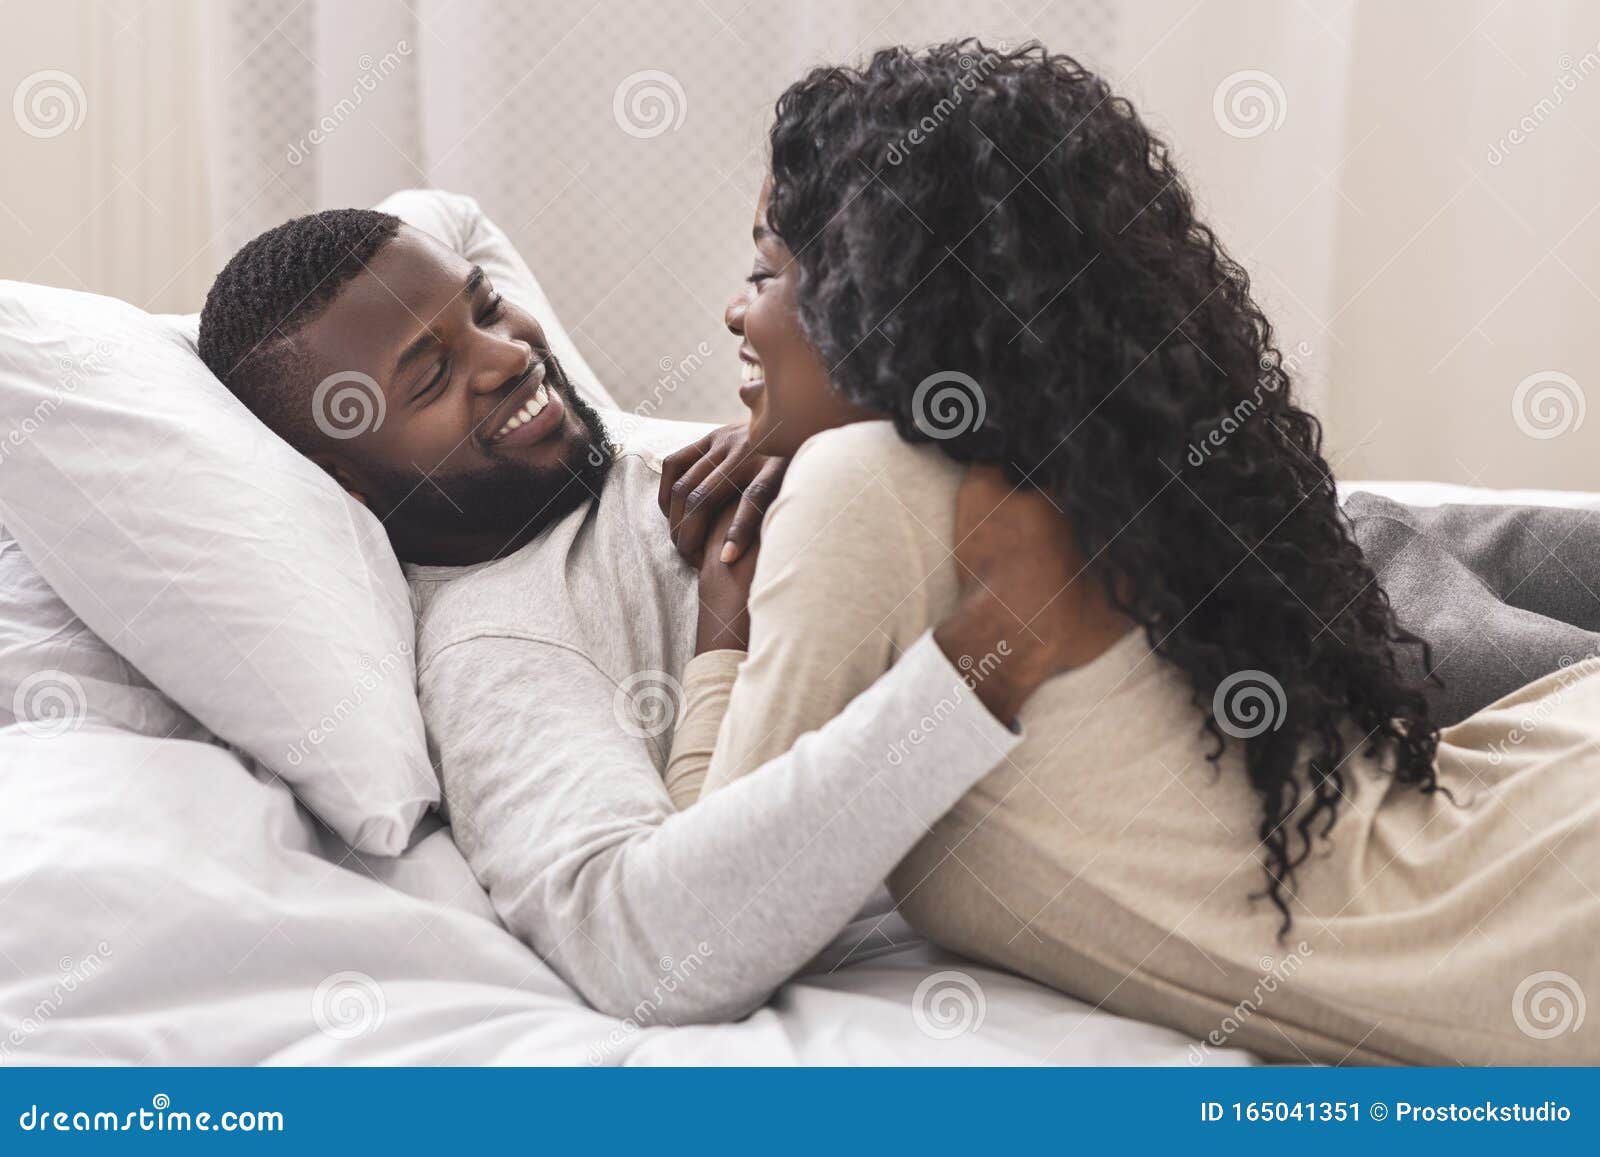 Banque d'images - Amour flirt couple et étreindre dans son lit